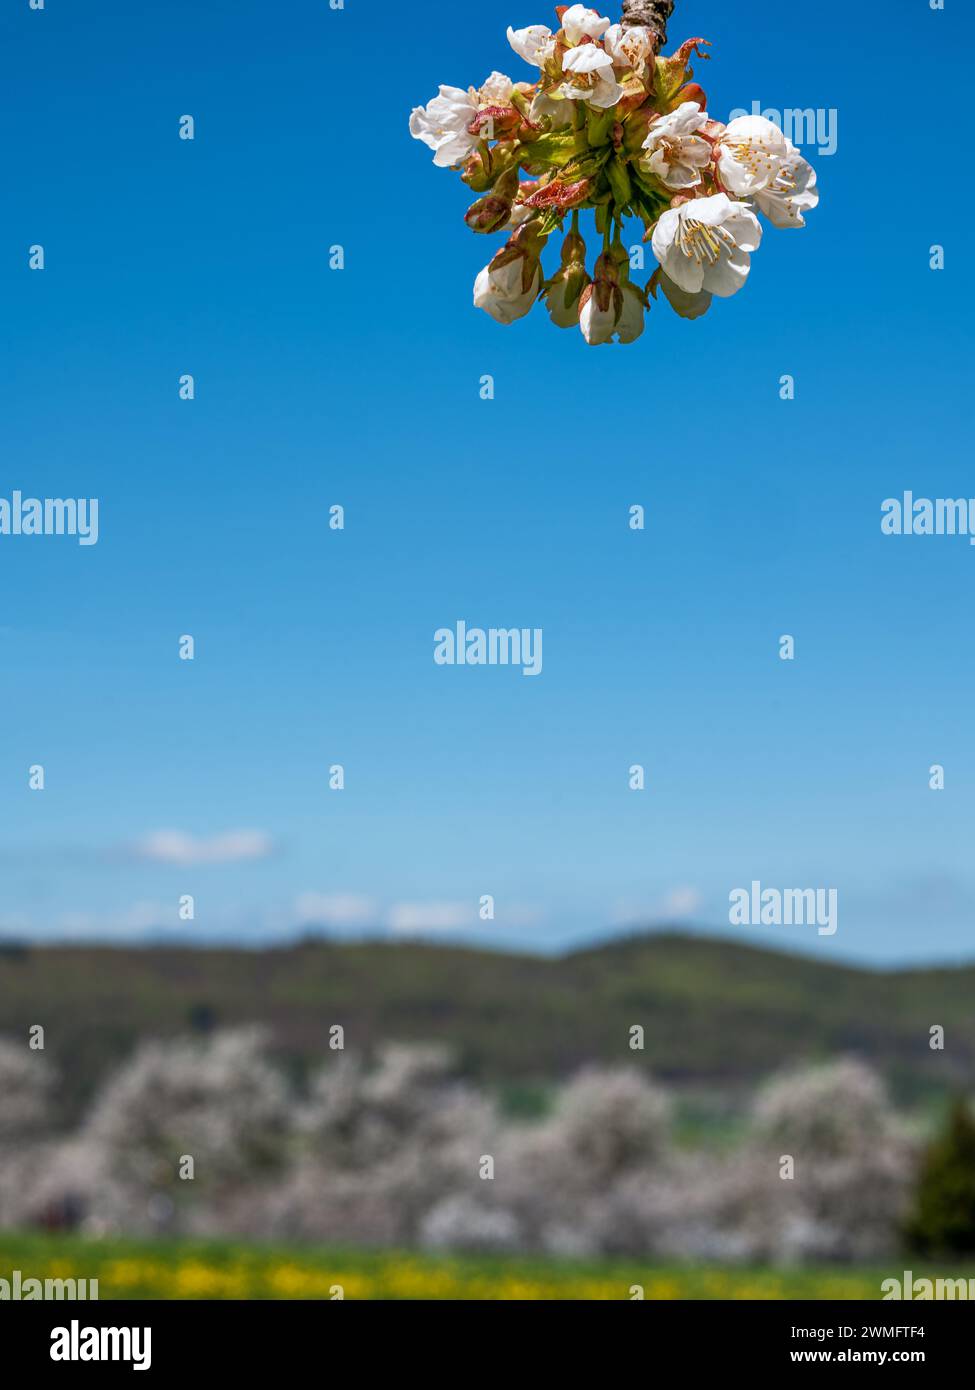 Gros plan d'une branche avec des cerisiers en fleurs devant un paysage flou avec des cerisiers et un ciel bleu Banque D'Images